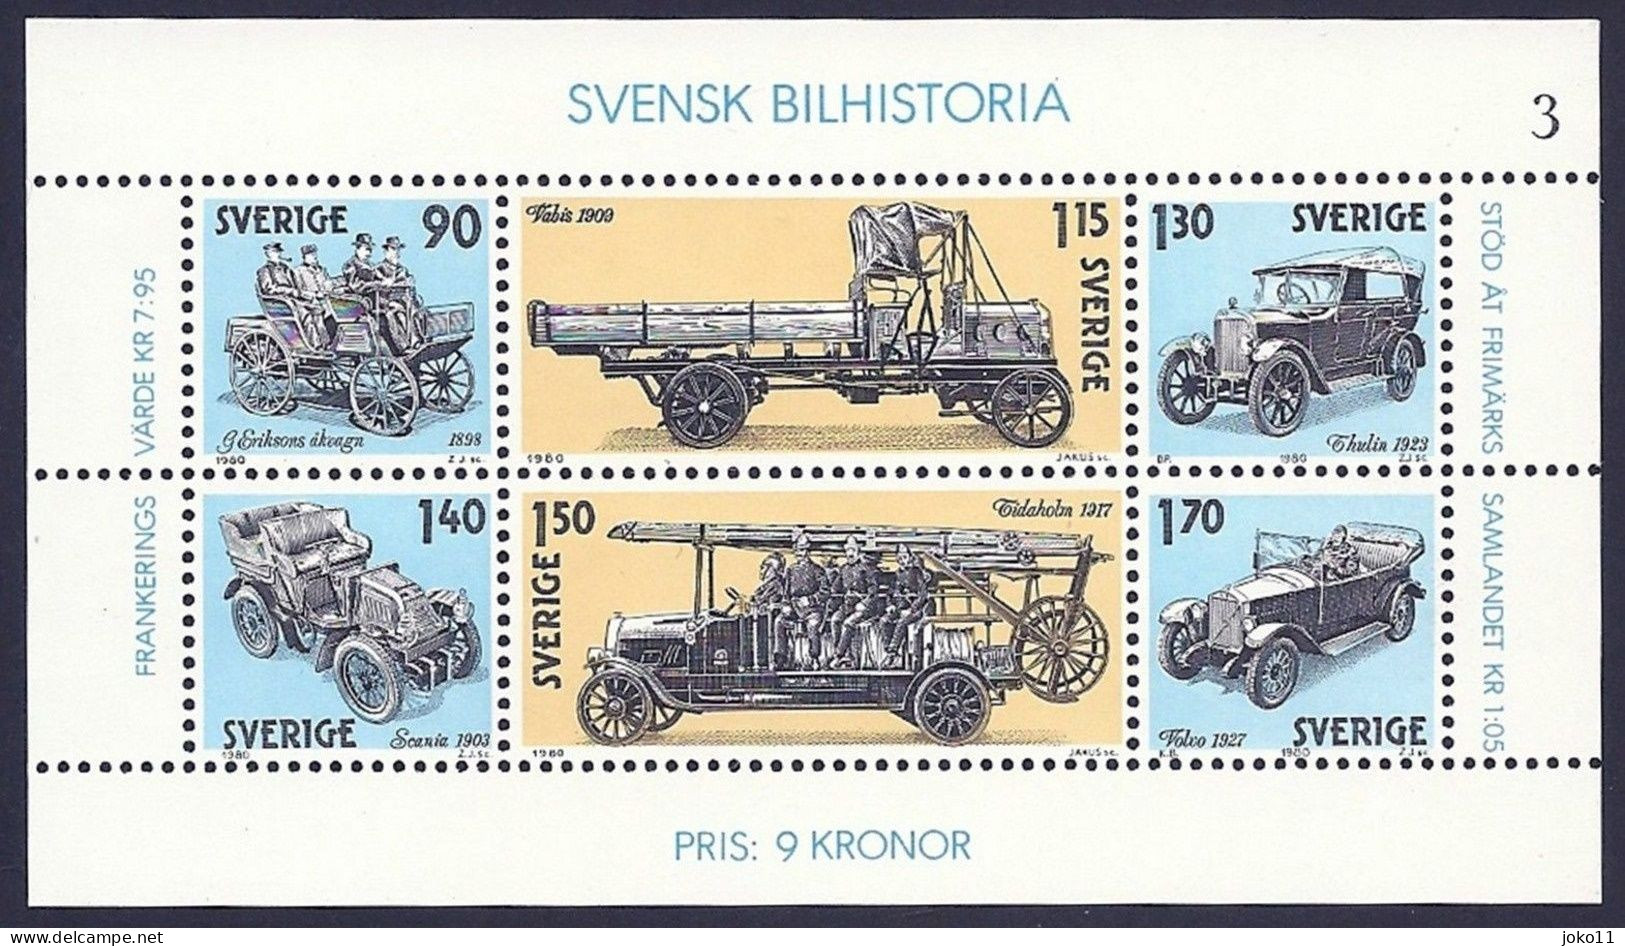 Schweden, 1980, Michel-Nr. 1118-1123, **postfrisch - Unused Stamps